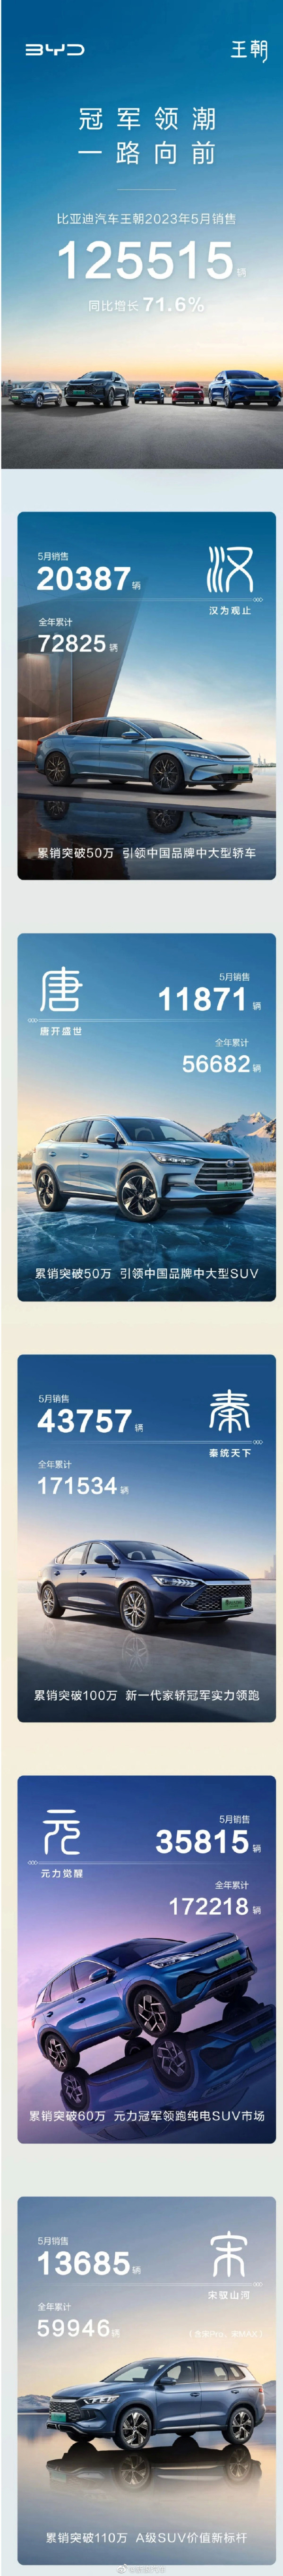 比亚迪王朝车型5月销量125515辆 秦系列占比三分之一